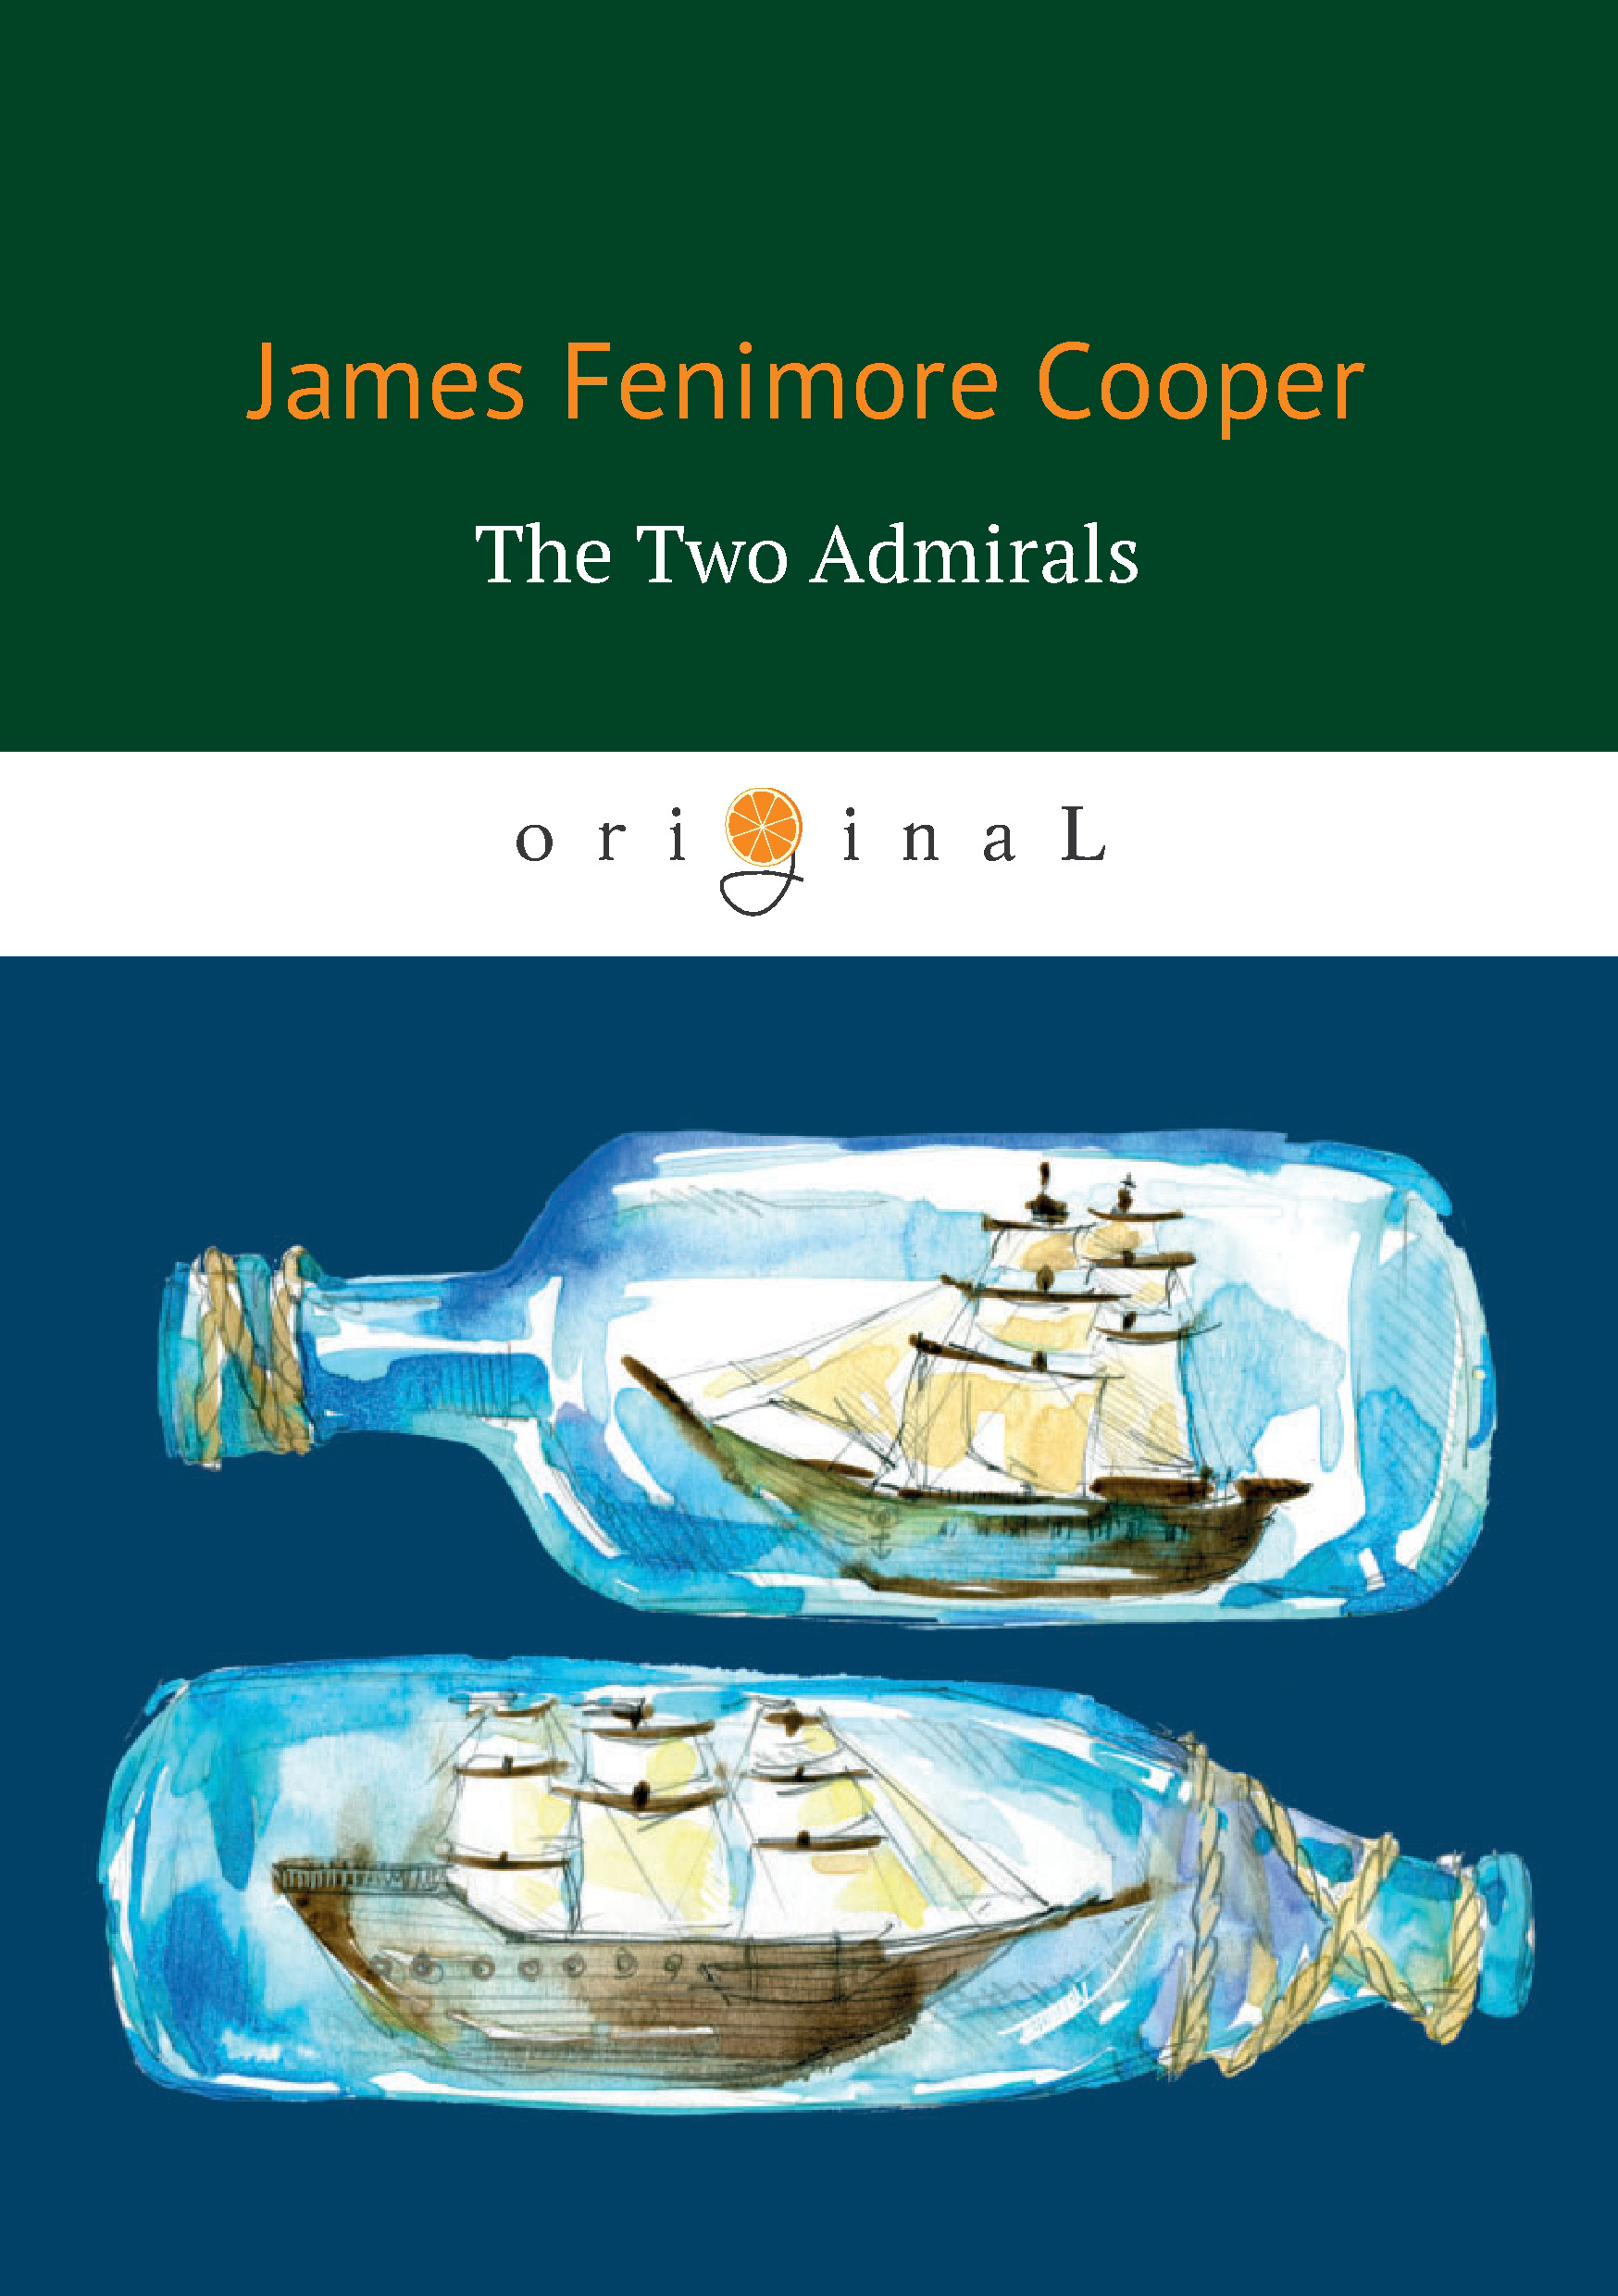 Книга The Two Admirals из серии , созданная Джеймс Фенимор Купер, может относится к жанру Исторические приключения, Приключения: прочее, Литература 19 века, Морские приключения. Стоимость электронной книги The Two Admirals с идентификатором 33817442 составляет 199.00 руб.